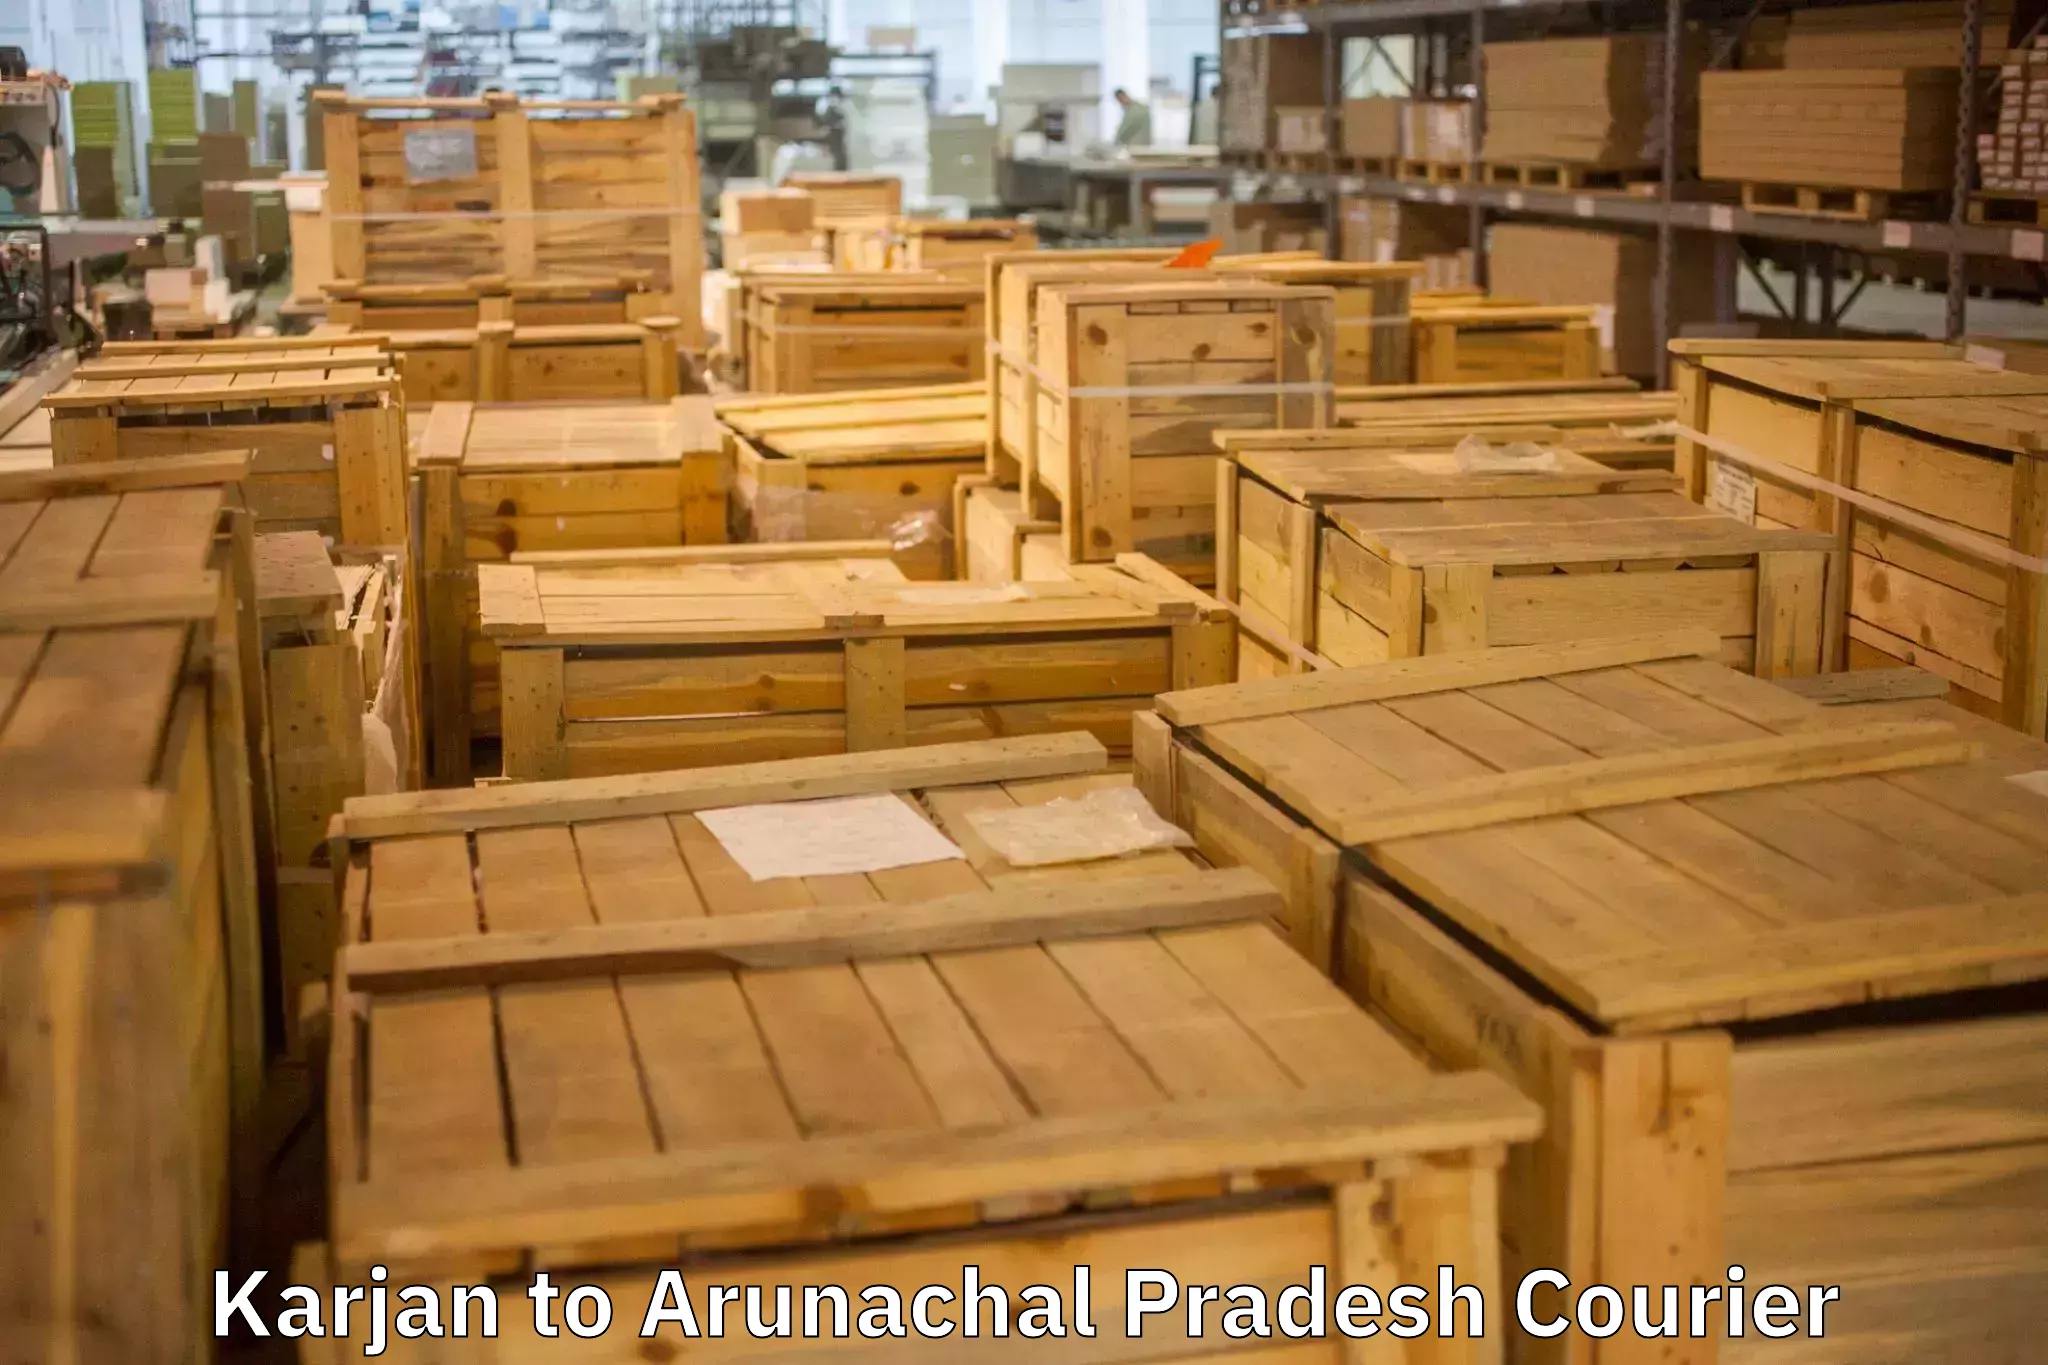 Moving and packing experts Karjan to Jairampur